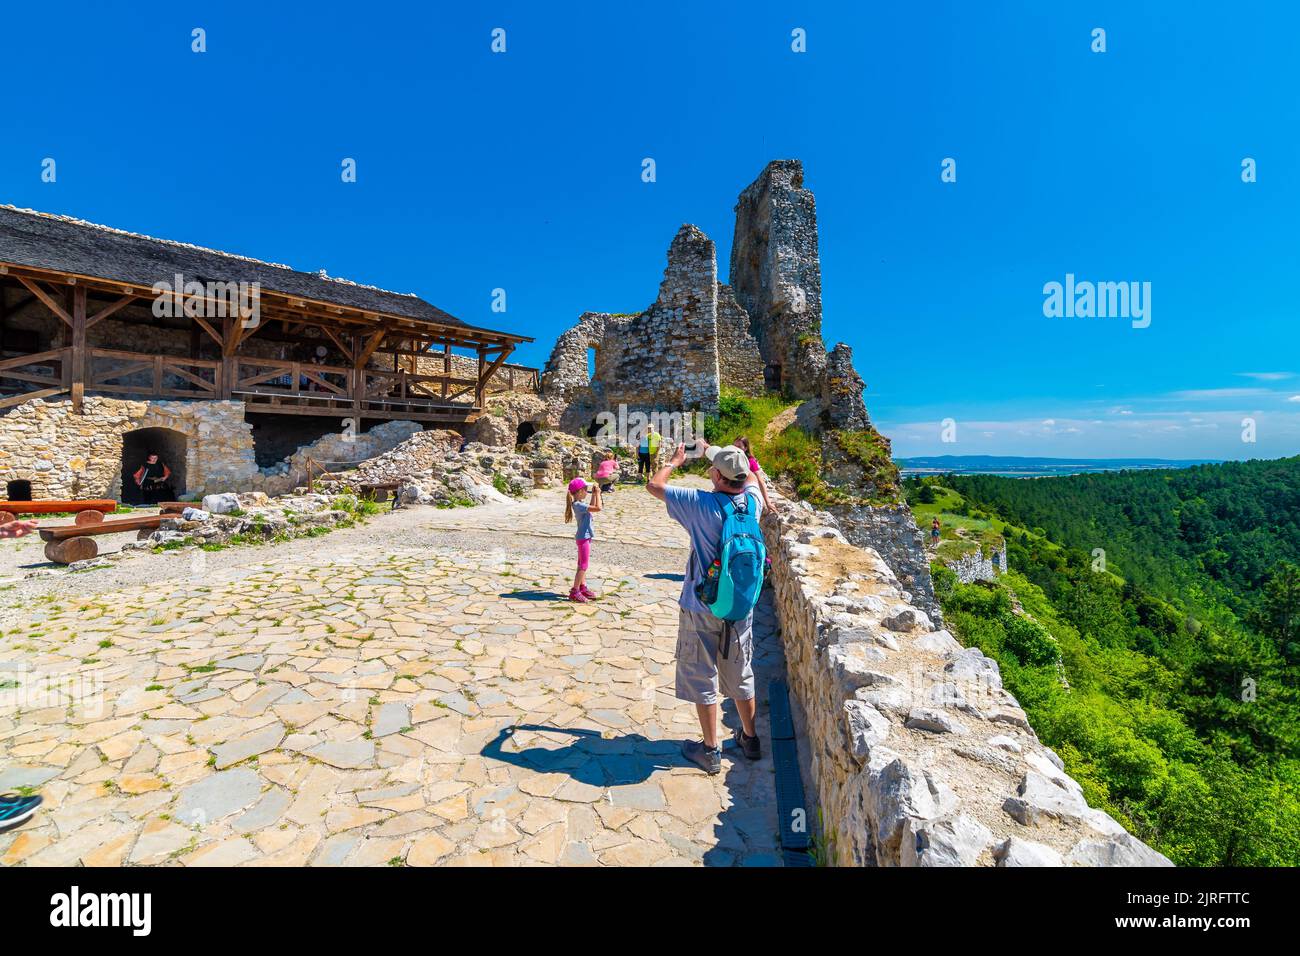 Cachtice, Slowakei - 4,7.2020: Touristen besuchen die Ruine der mittelalterlichen Burg Cachtice. Berühmte Burg aus der Legende über die Blutlady Bathory bekannt. Summe Stockfoto